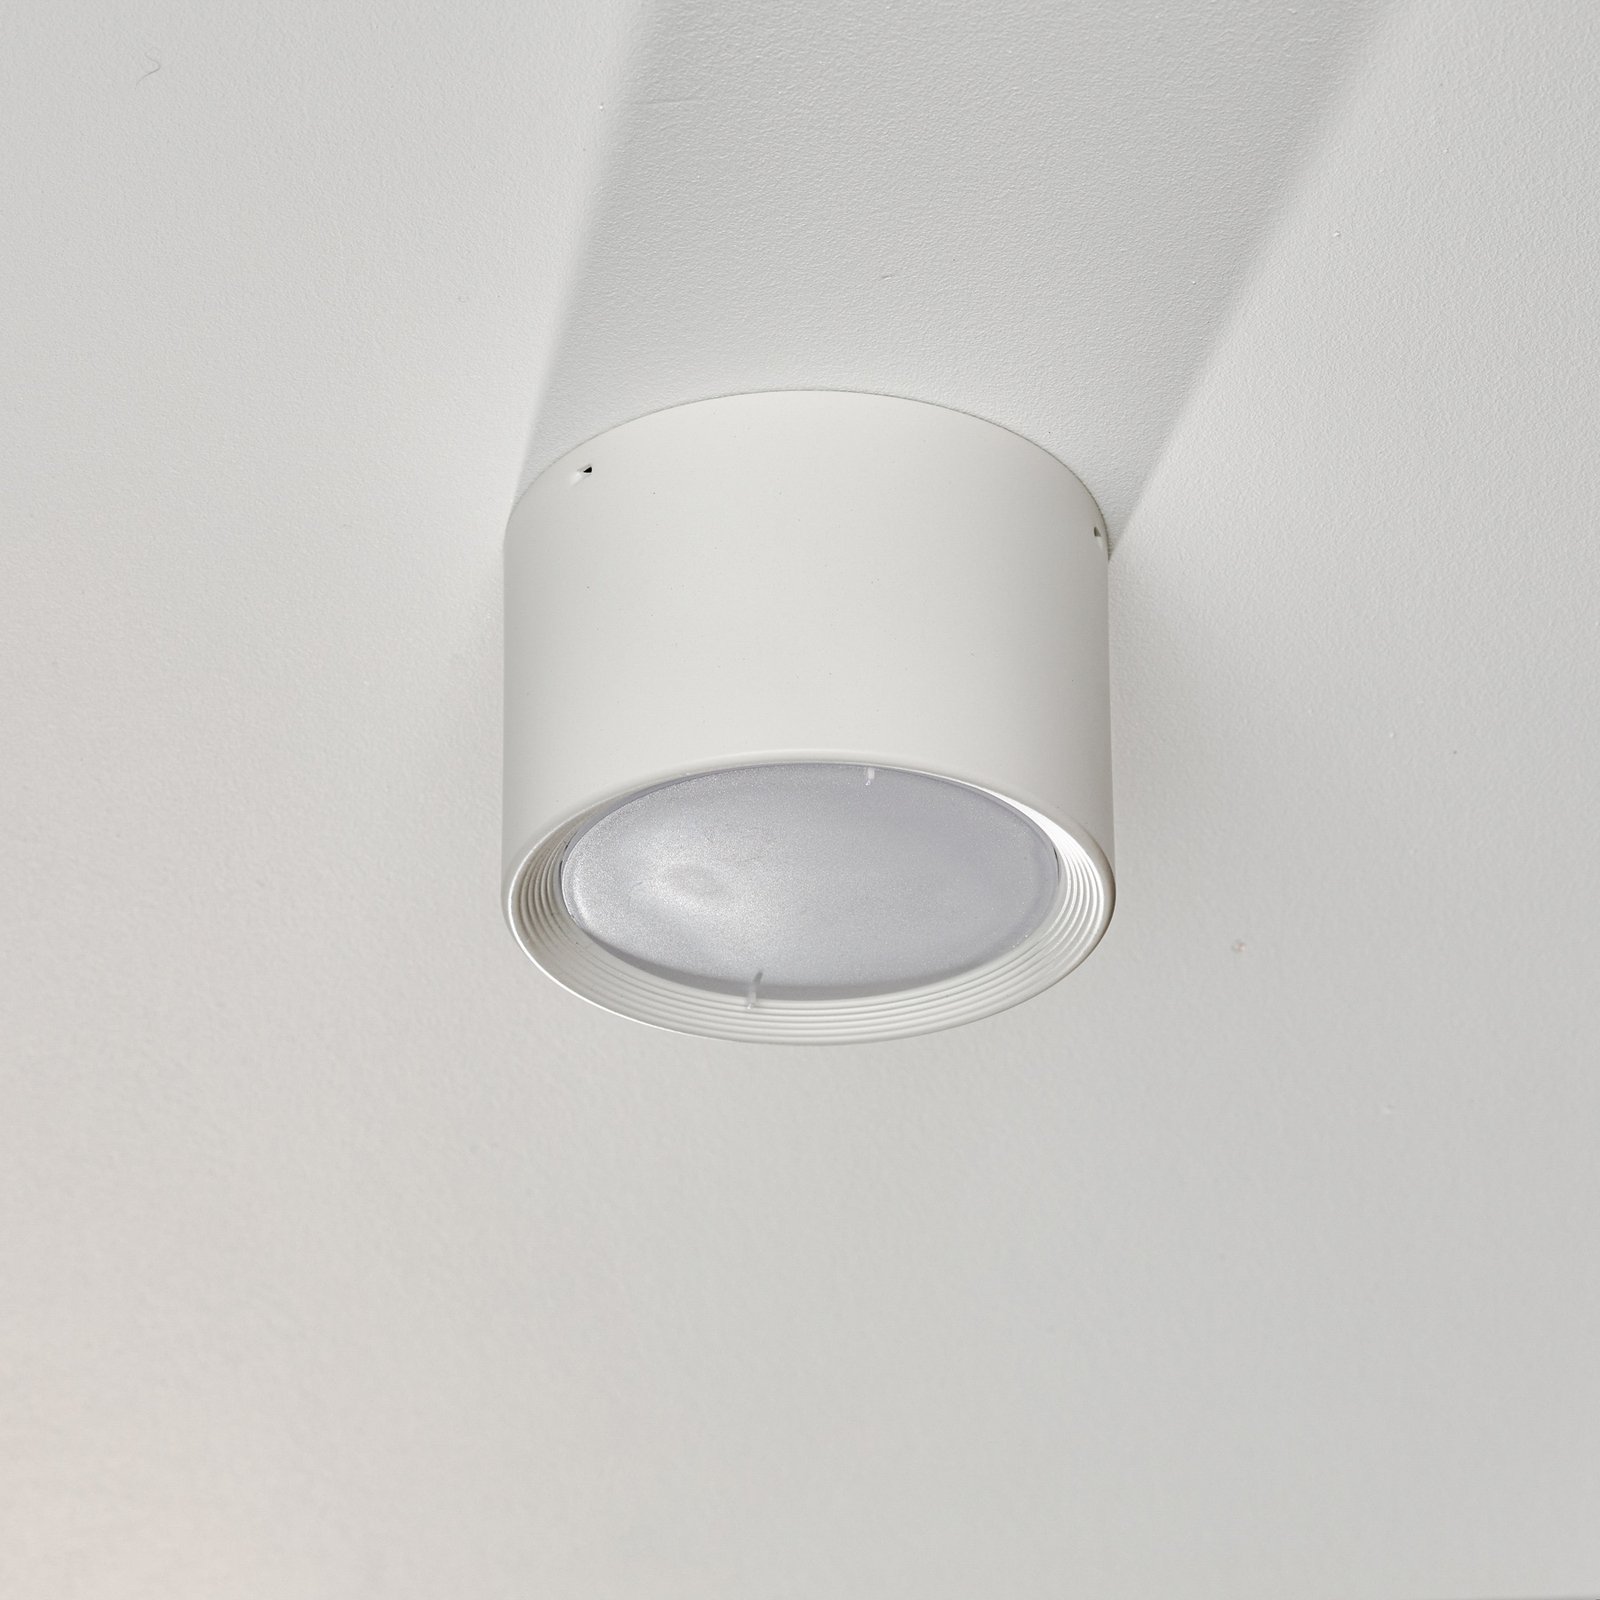 Svetilka Ita LED v beli barvi z difuzorjem, Ø 12 cm